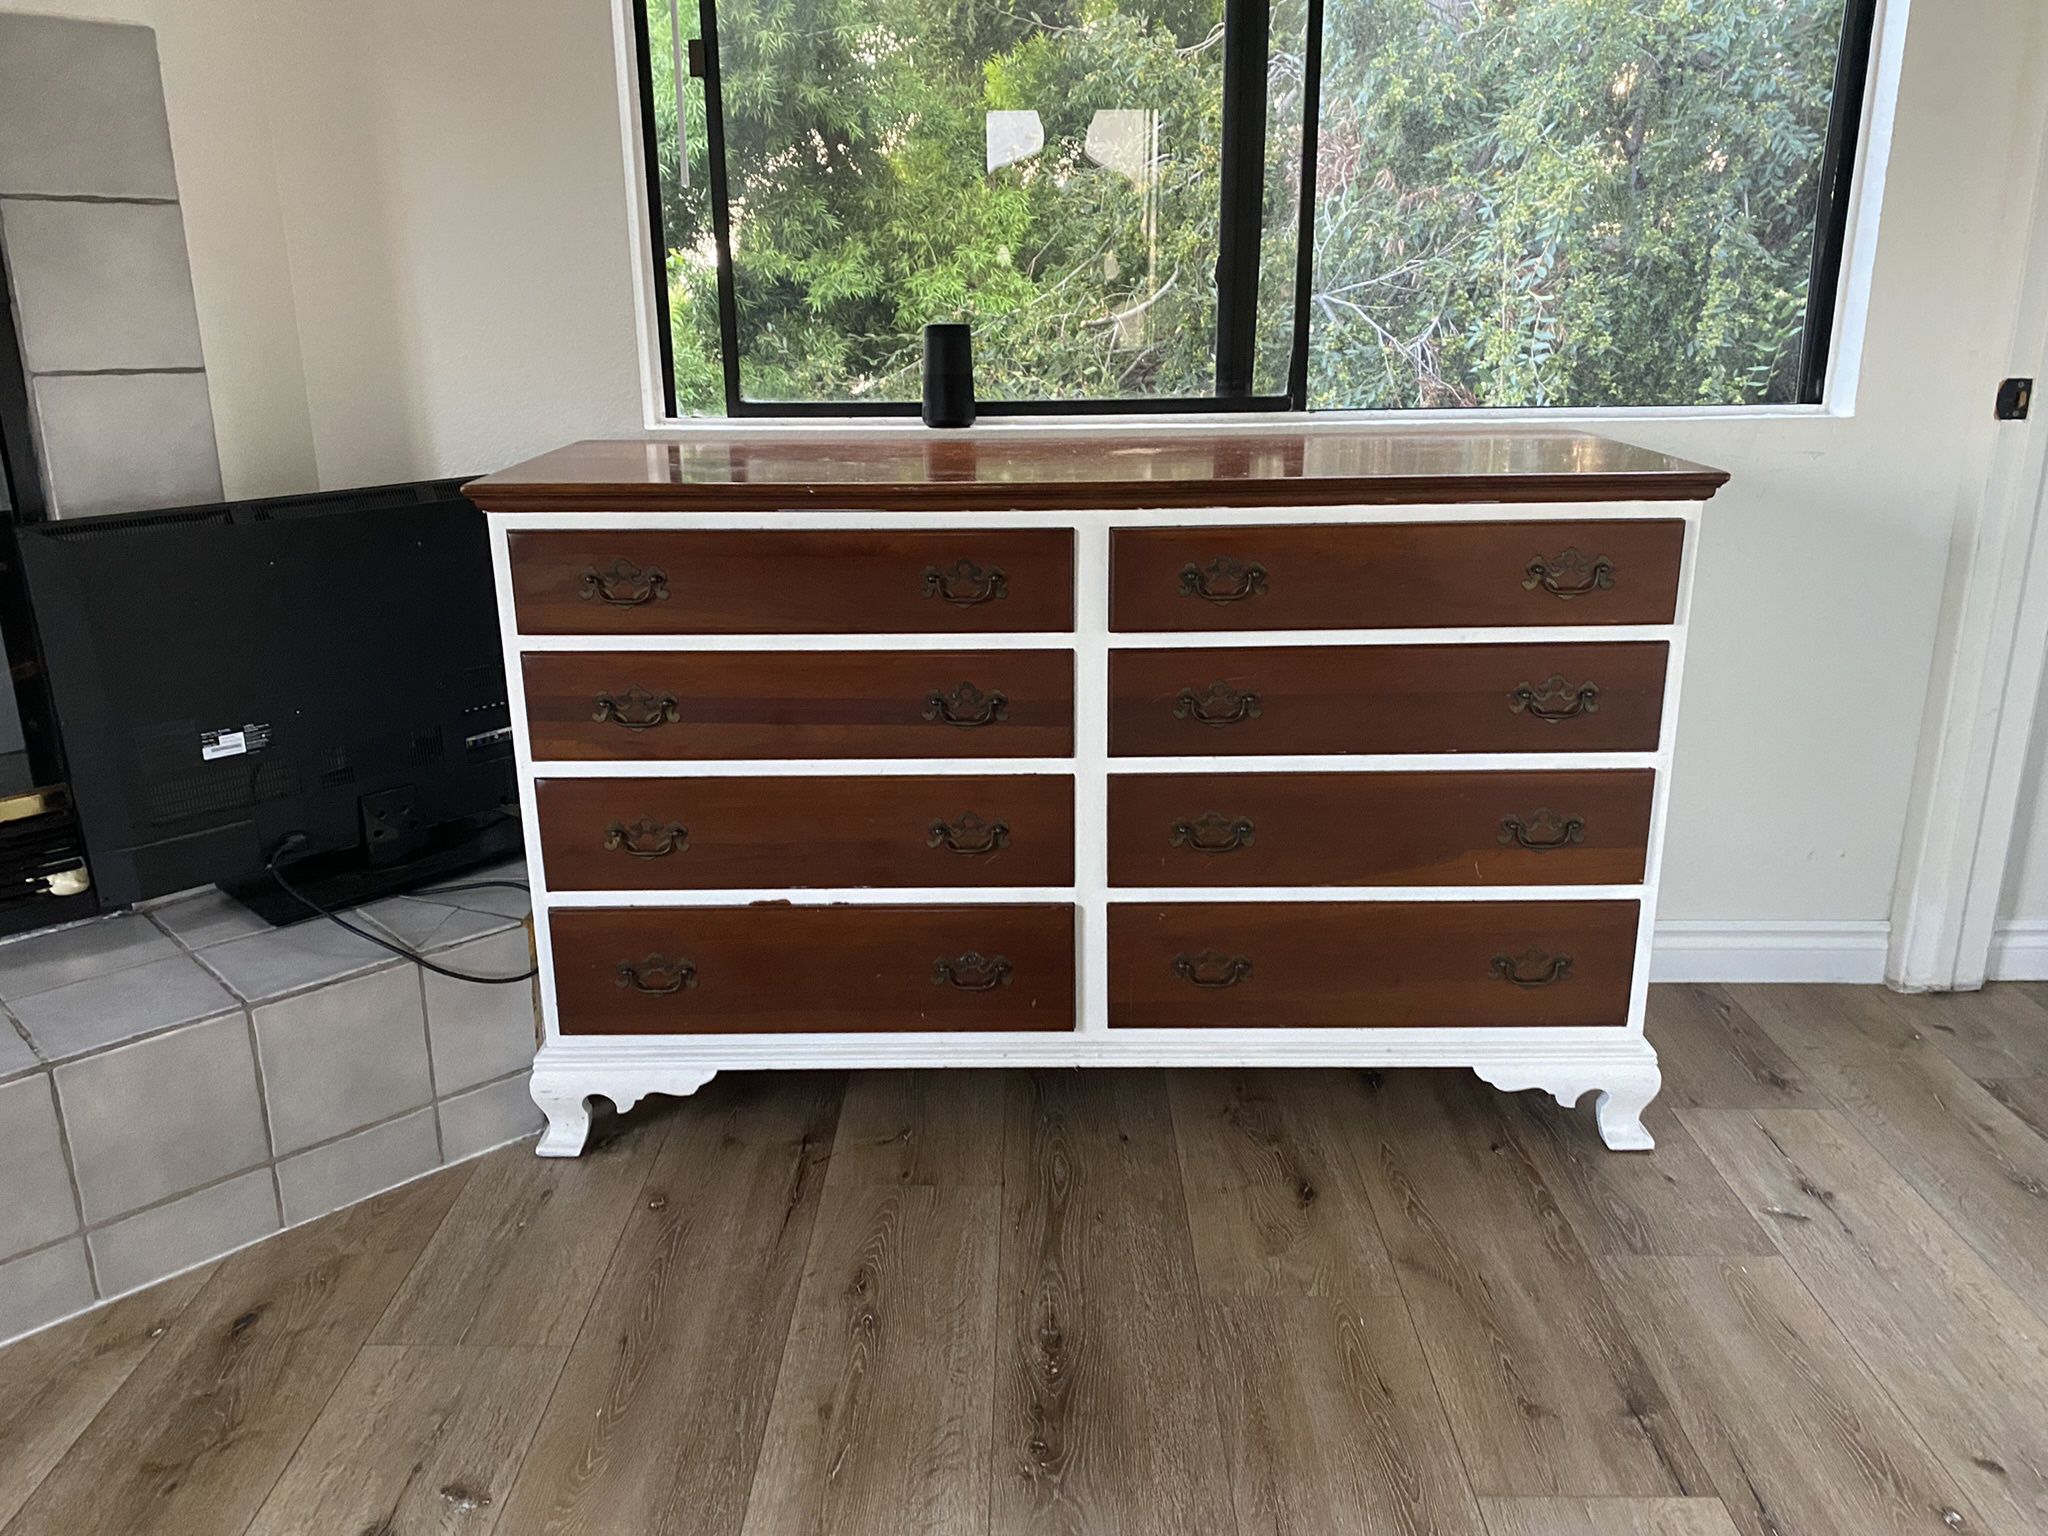 Solid Wood Antique Dresser